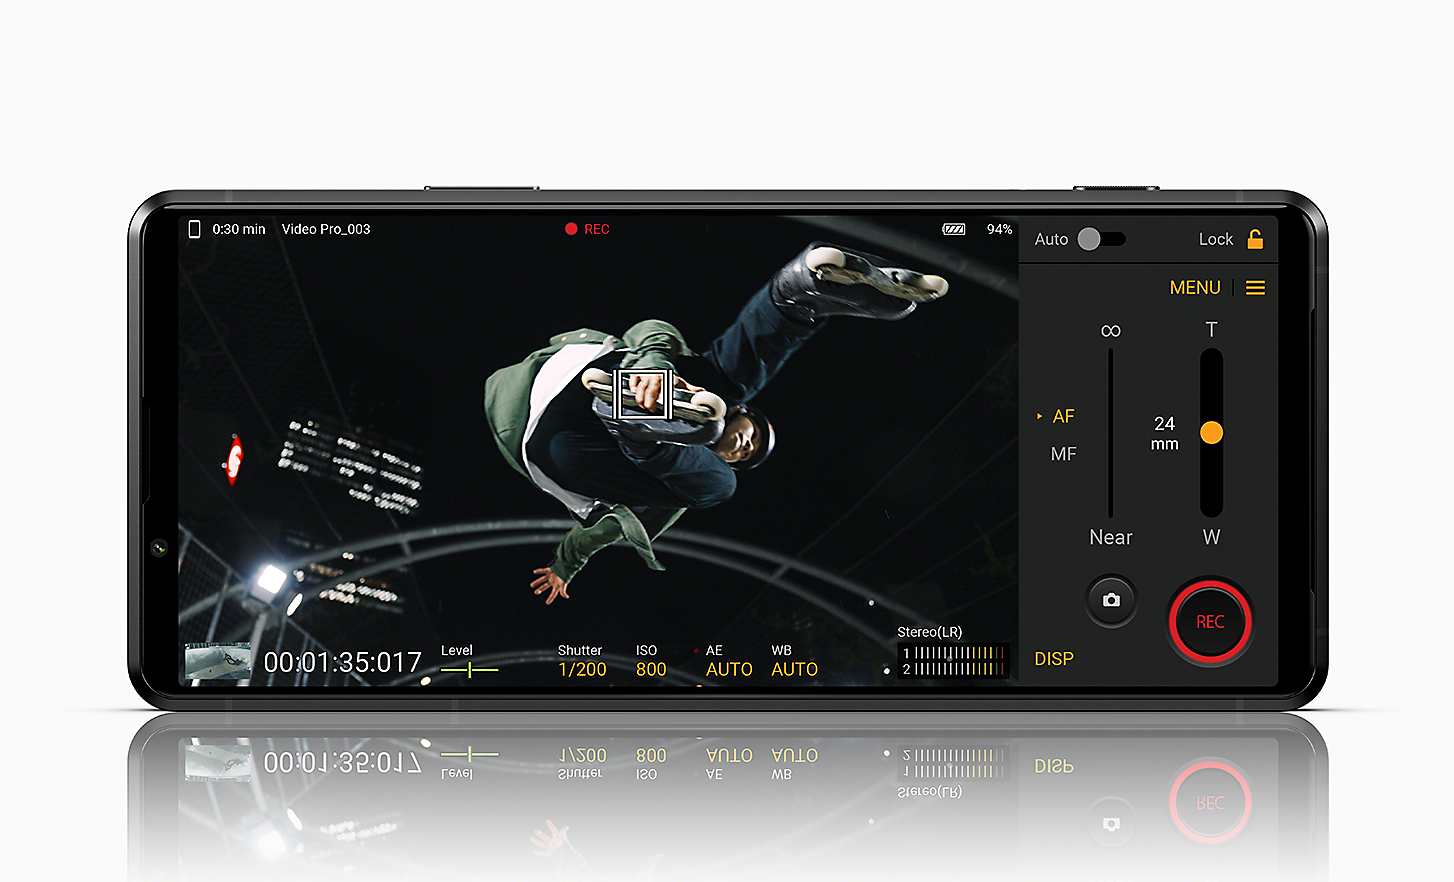 Xperia PRO-I đang hiển thị hình ảnh của người trượt pa-tanh và giao diện người dùng Videography Pro